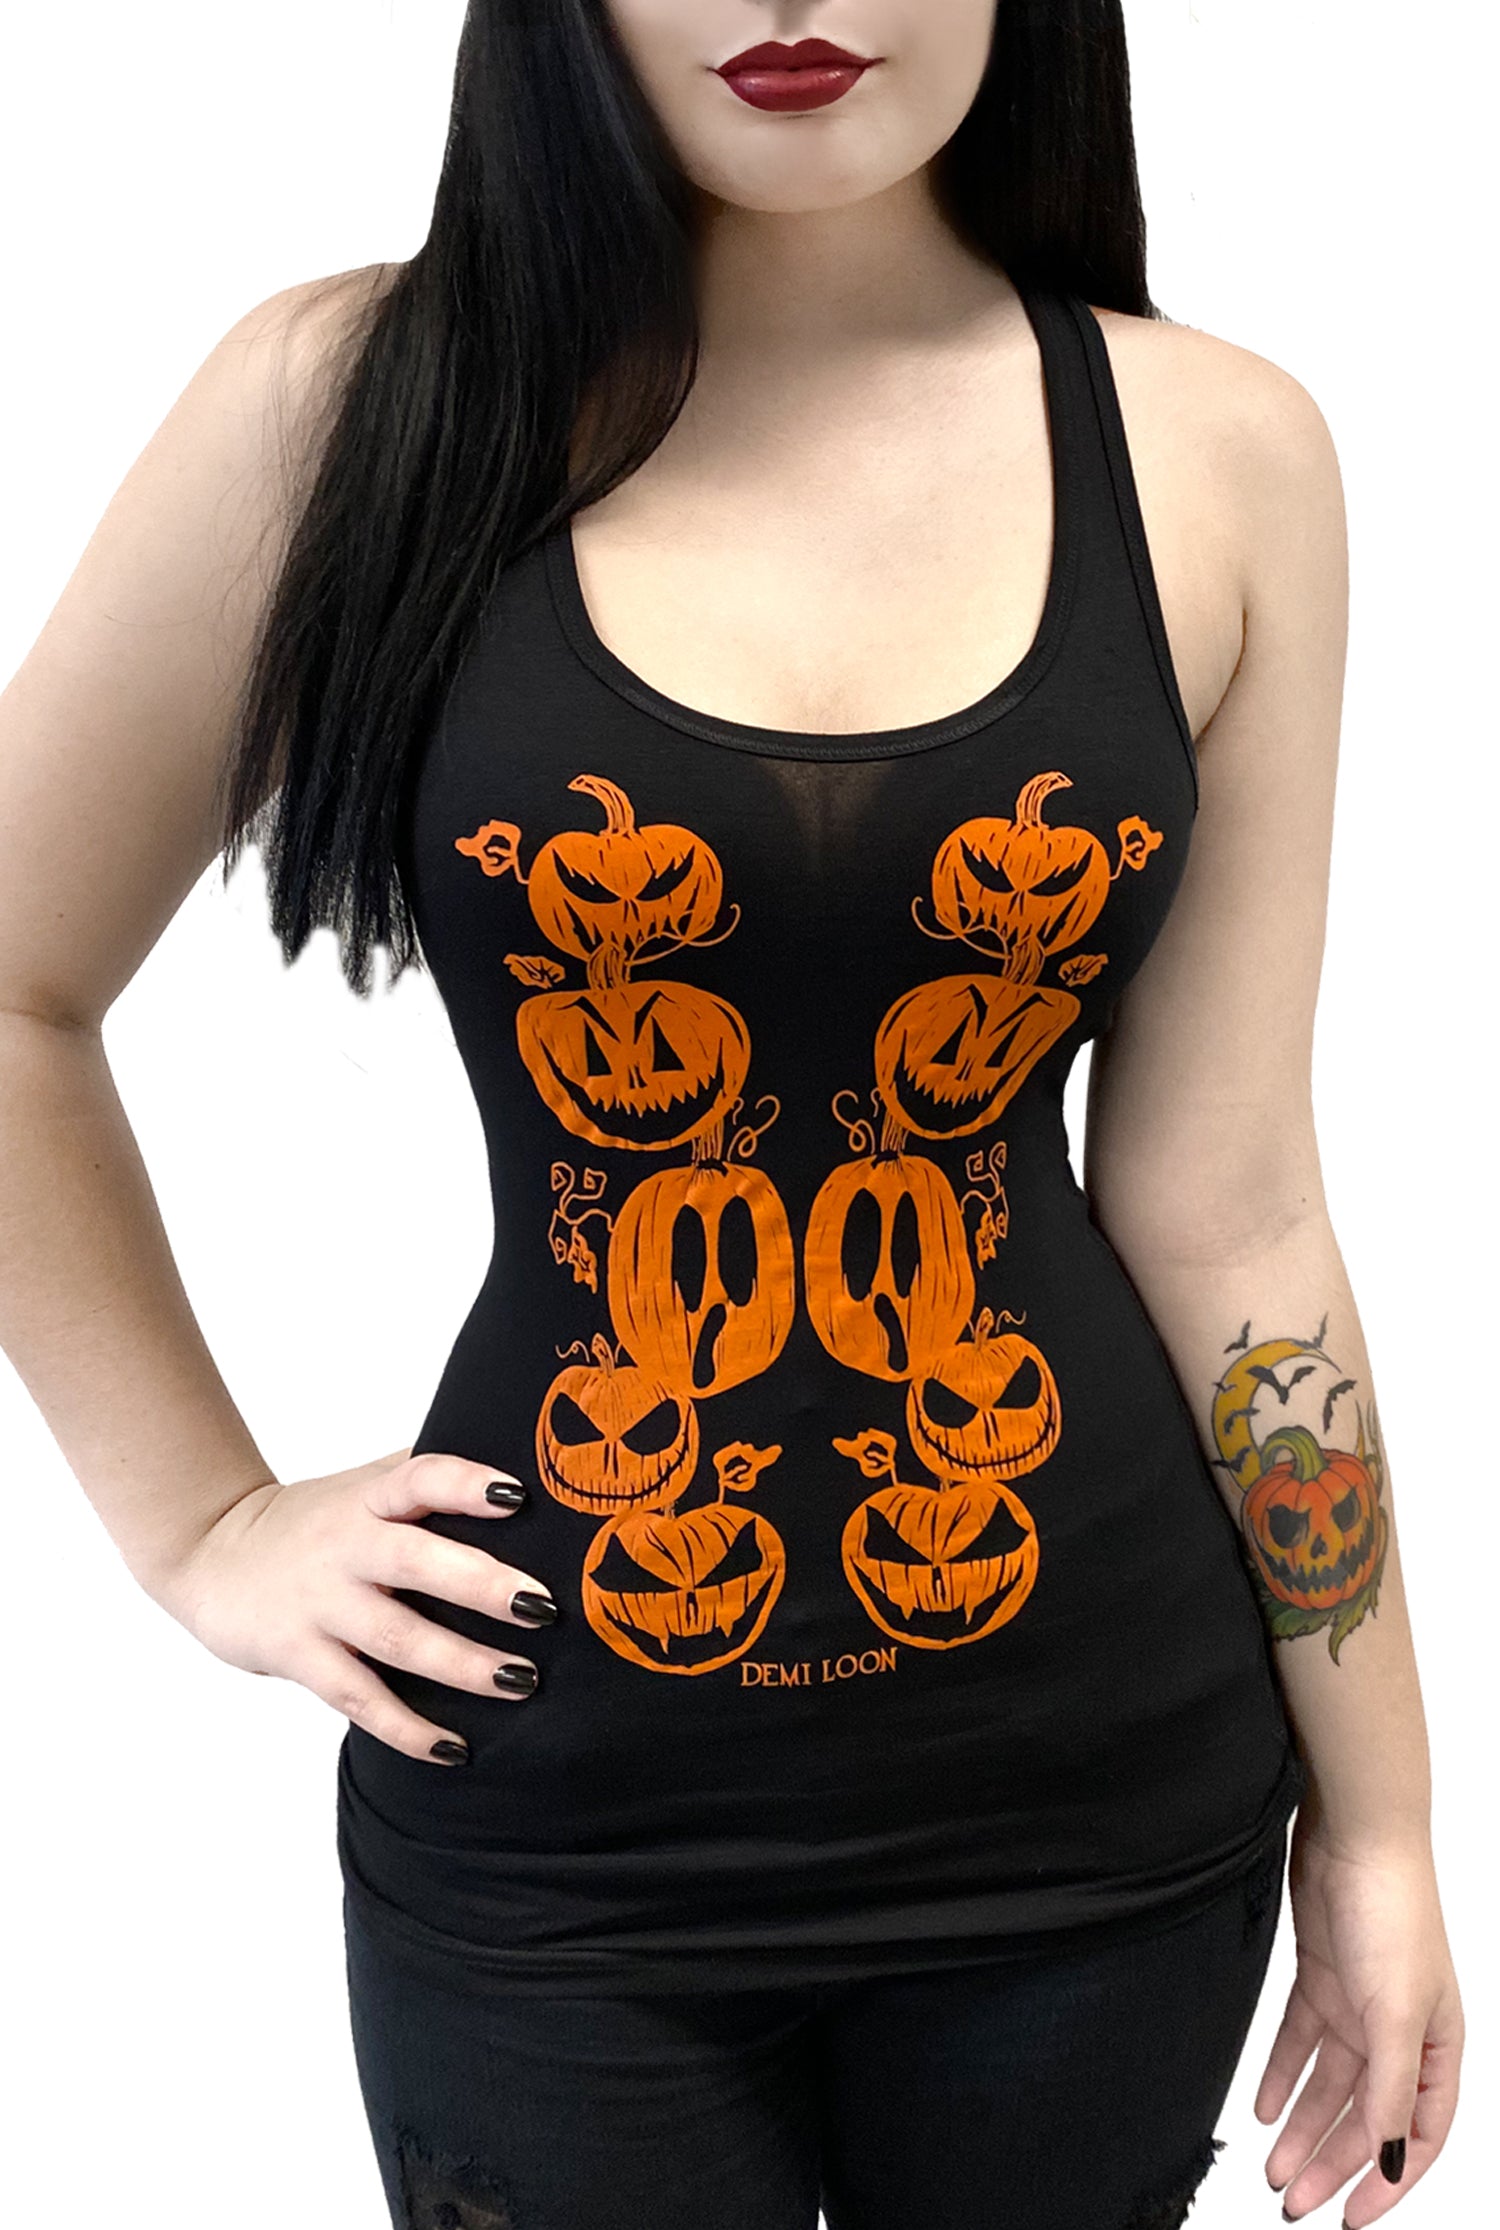 Haunted Pumpkin Halloween Graphic Tank Top